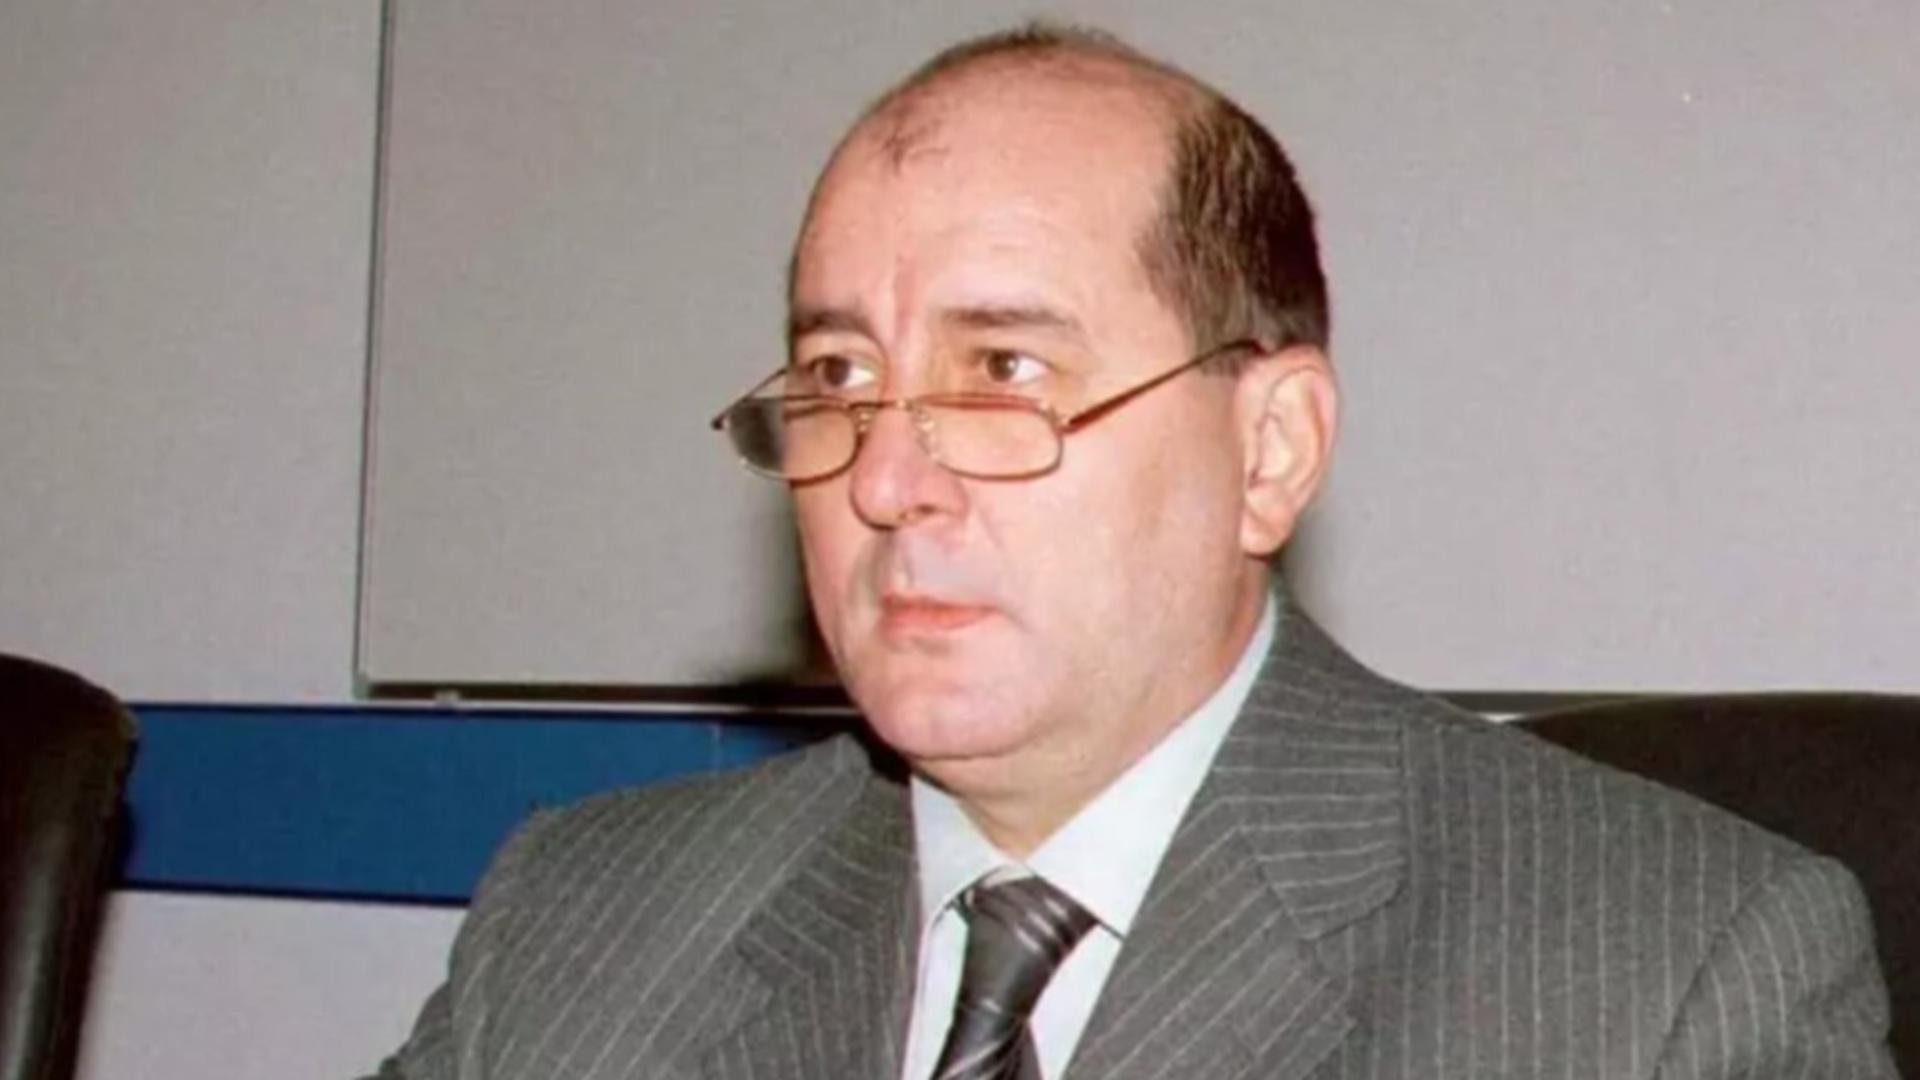  Cristian Georgică Celea, fost general SRI, propus șef la CNAS